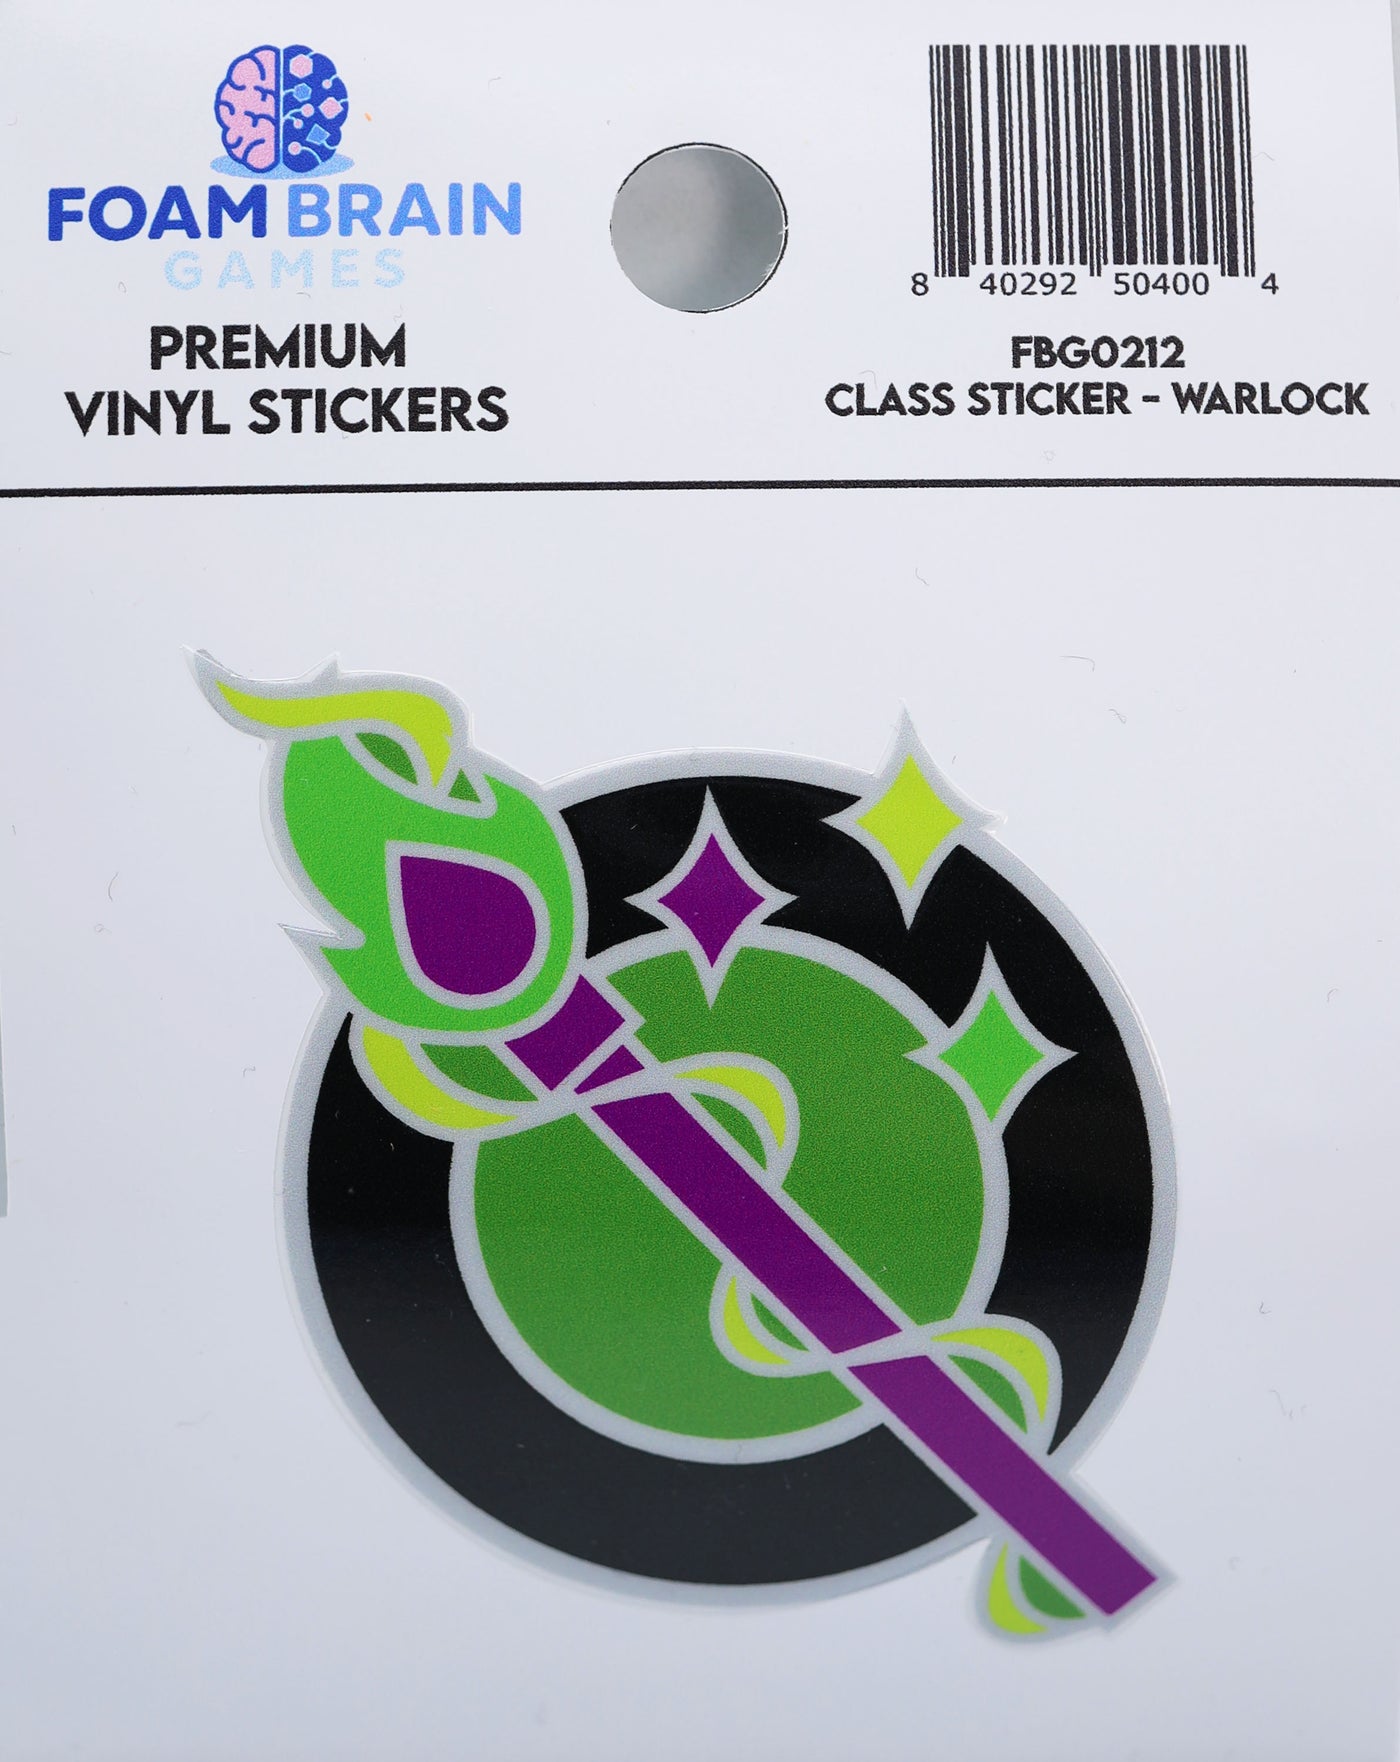 Class Sticker - Warlock Stickers Foam Brain Games